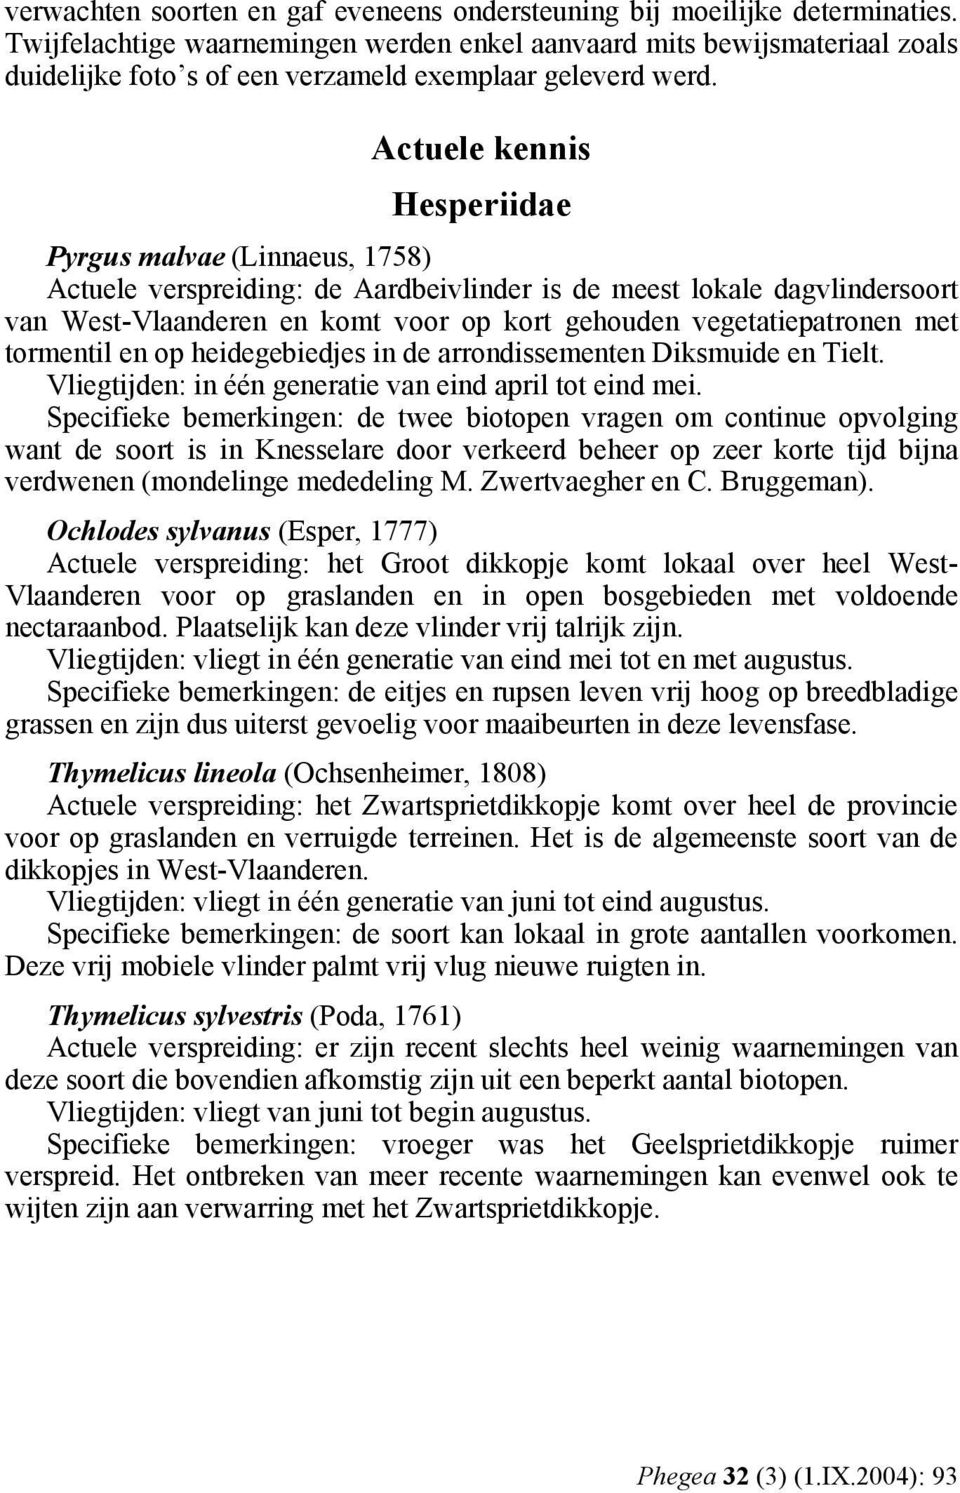 Actuele kennis Hesperiidae Pyrgus malvae (Linnaeus, 1758) Actuele verspreiding: de Aardbeivlinder is de meest lokale dagvlindersoort van West-Vlaanderen en komt voor op kort gehouden